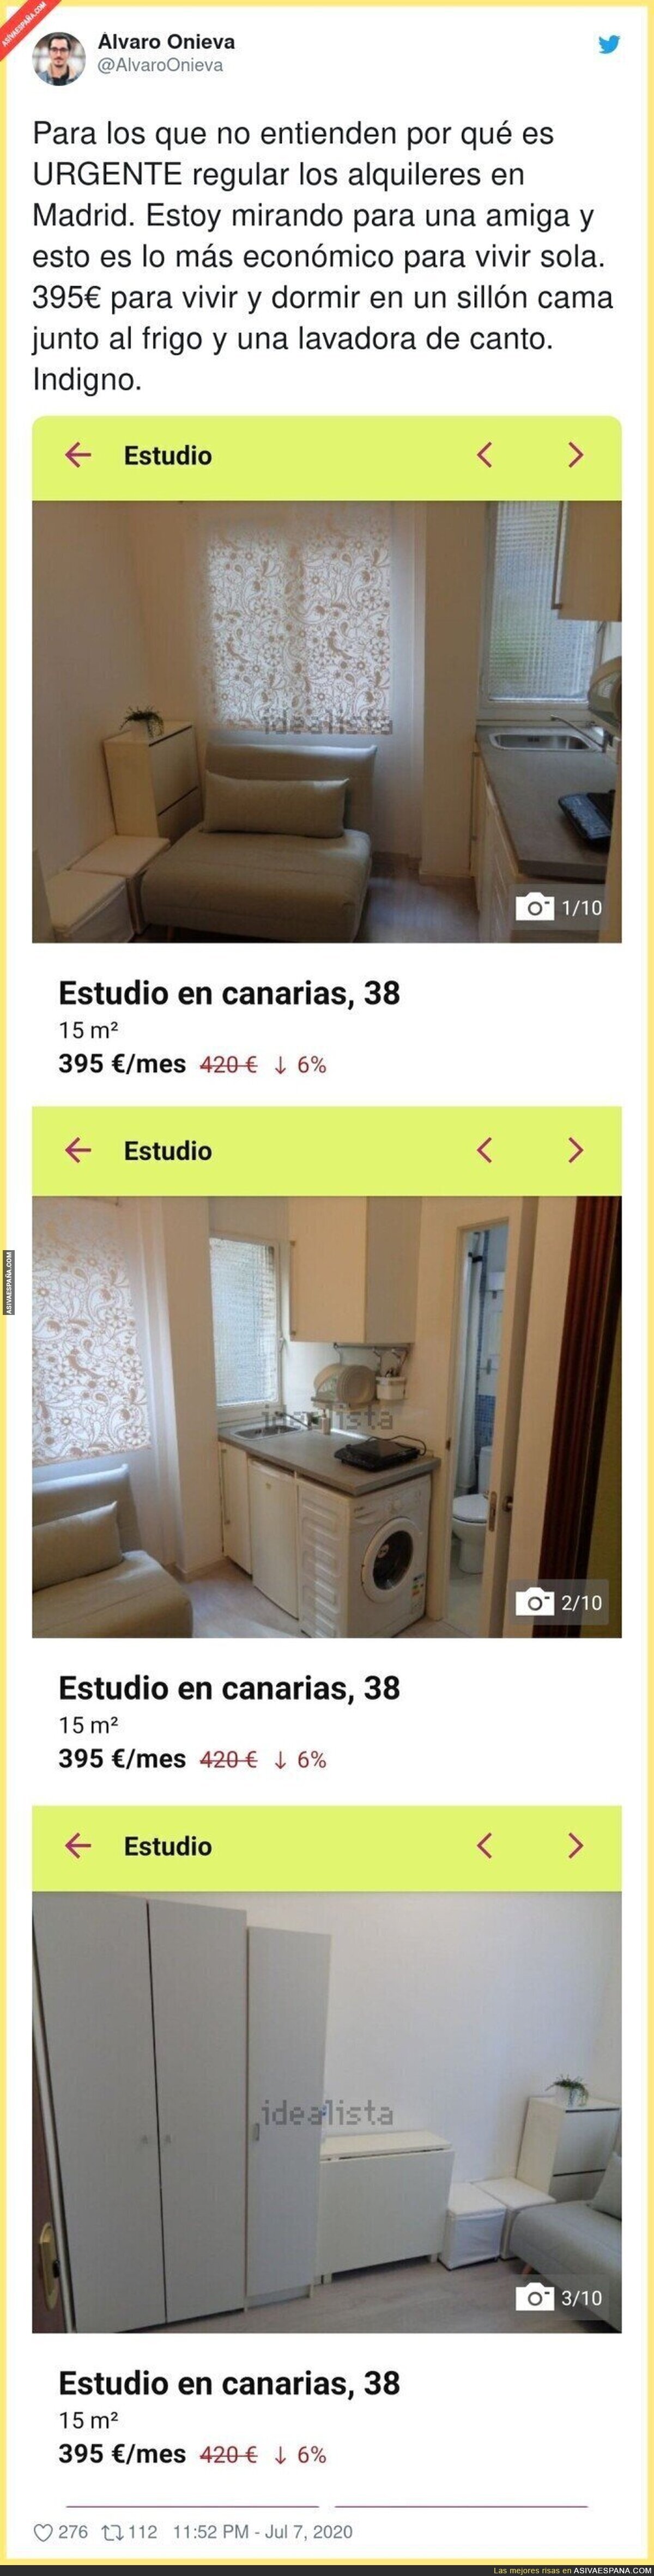 Atención a las imágenes del sitio más barato para vivir en Madrid